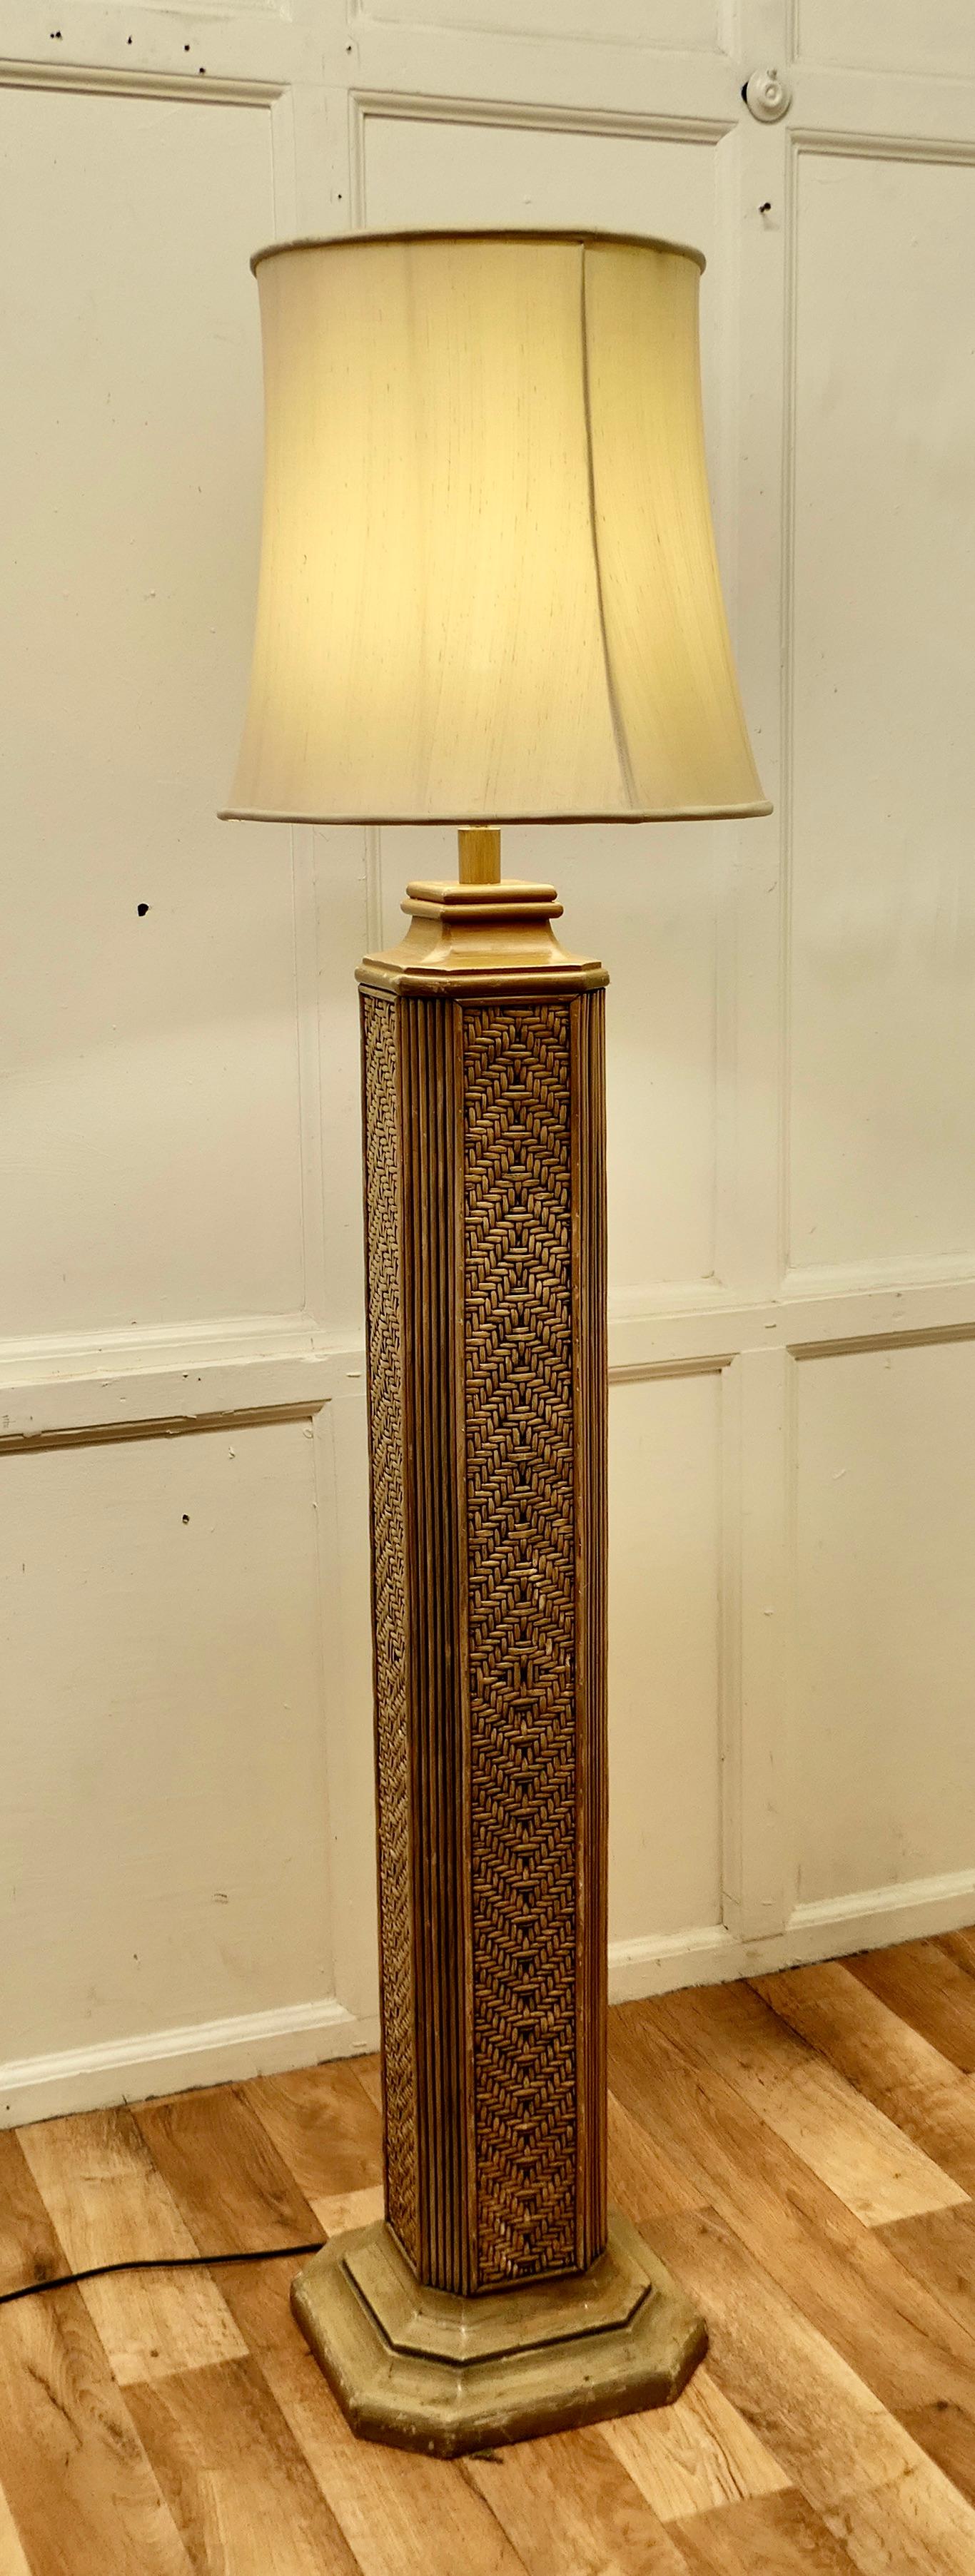 Grand lampadaire Art Déco à colonne en bambou.

Il s'agit d'un lampadaire à colonne Art déco très élégant.
La lampe a une colonne de forme carrée en bambou tressé et elle est posée sur une base de style Odéon assortie aux moulures supérieures.